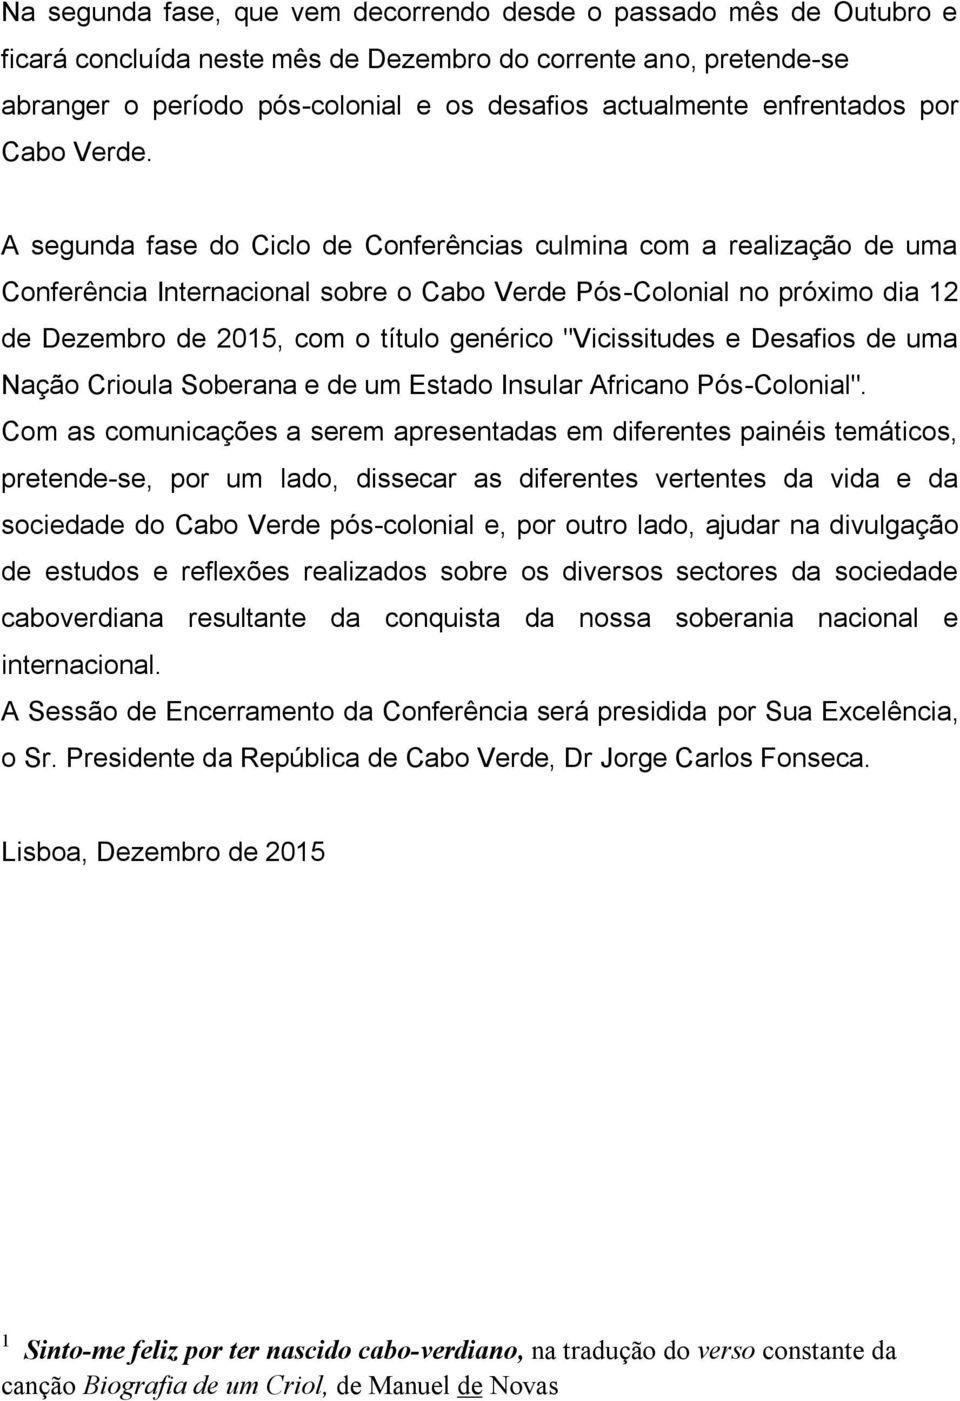 A segunda fase do Ciclo de Conferências culmina com a realização de uma Conferência Internacional sobre o Cabo Verde Pós-Colonial no próximo dia 12 de Dezembro de 2015, com o título genérico